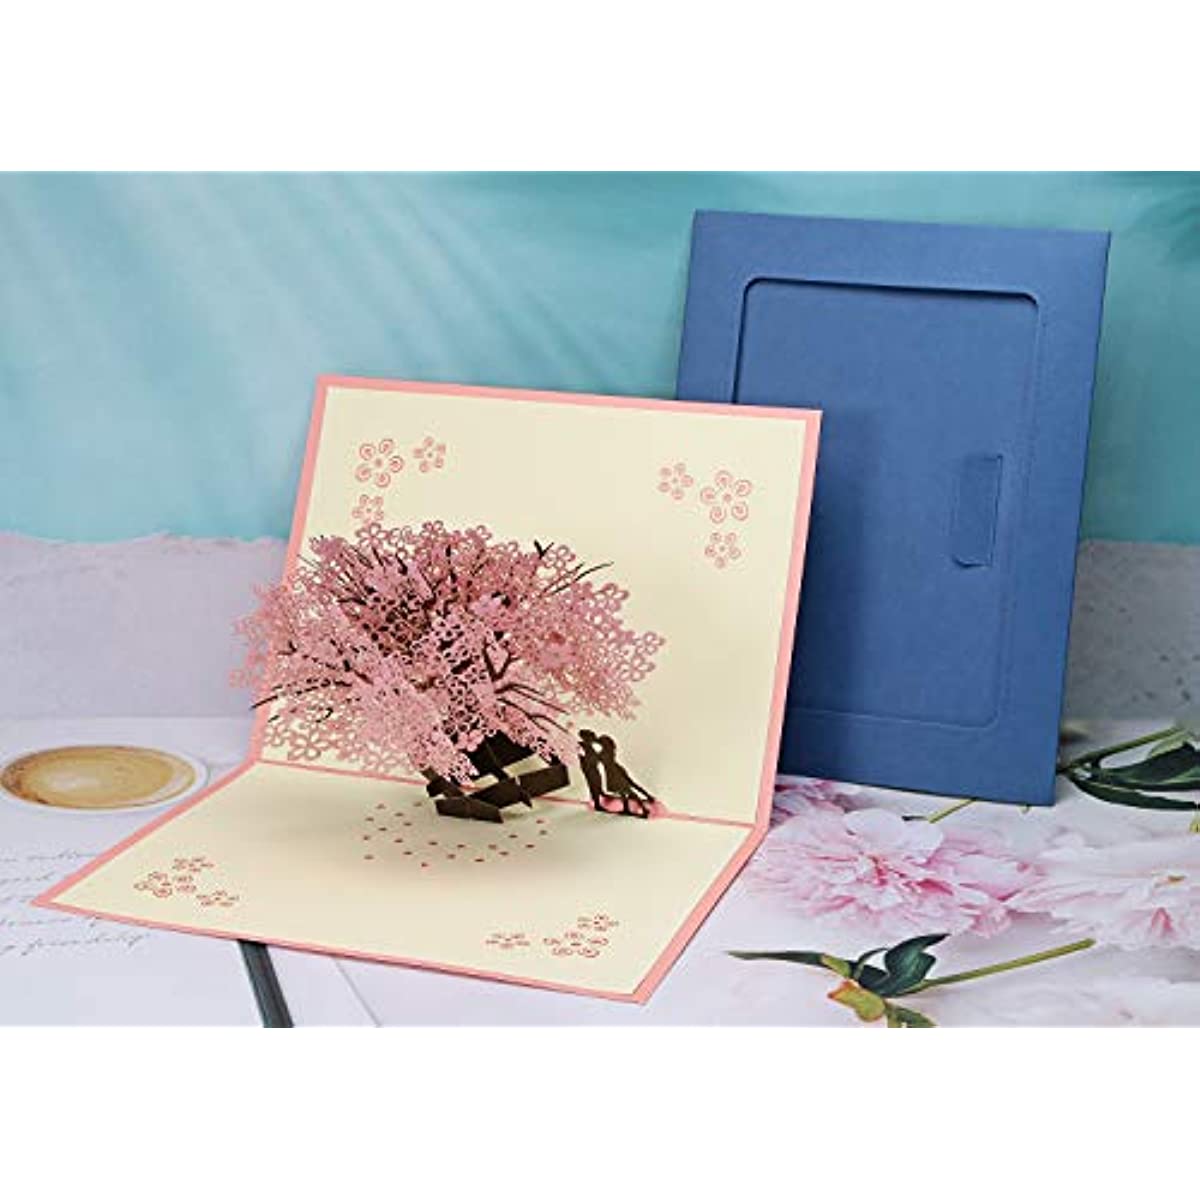 Карточка вишневого цвета всплыть 3D цветочная карта любовное письмо приветствие годовщины свадьба валентинка подарка на день рождения подарочная карта пустые канцелярские товары для своего его муж, жена